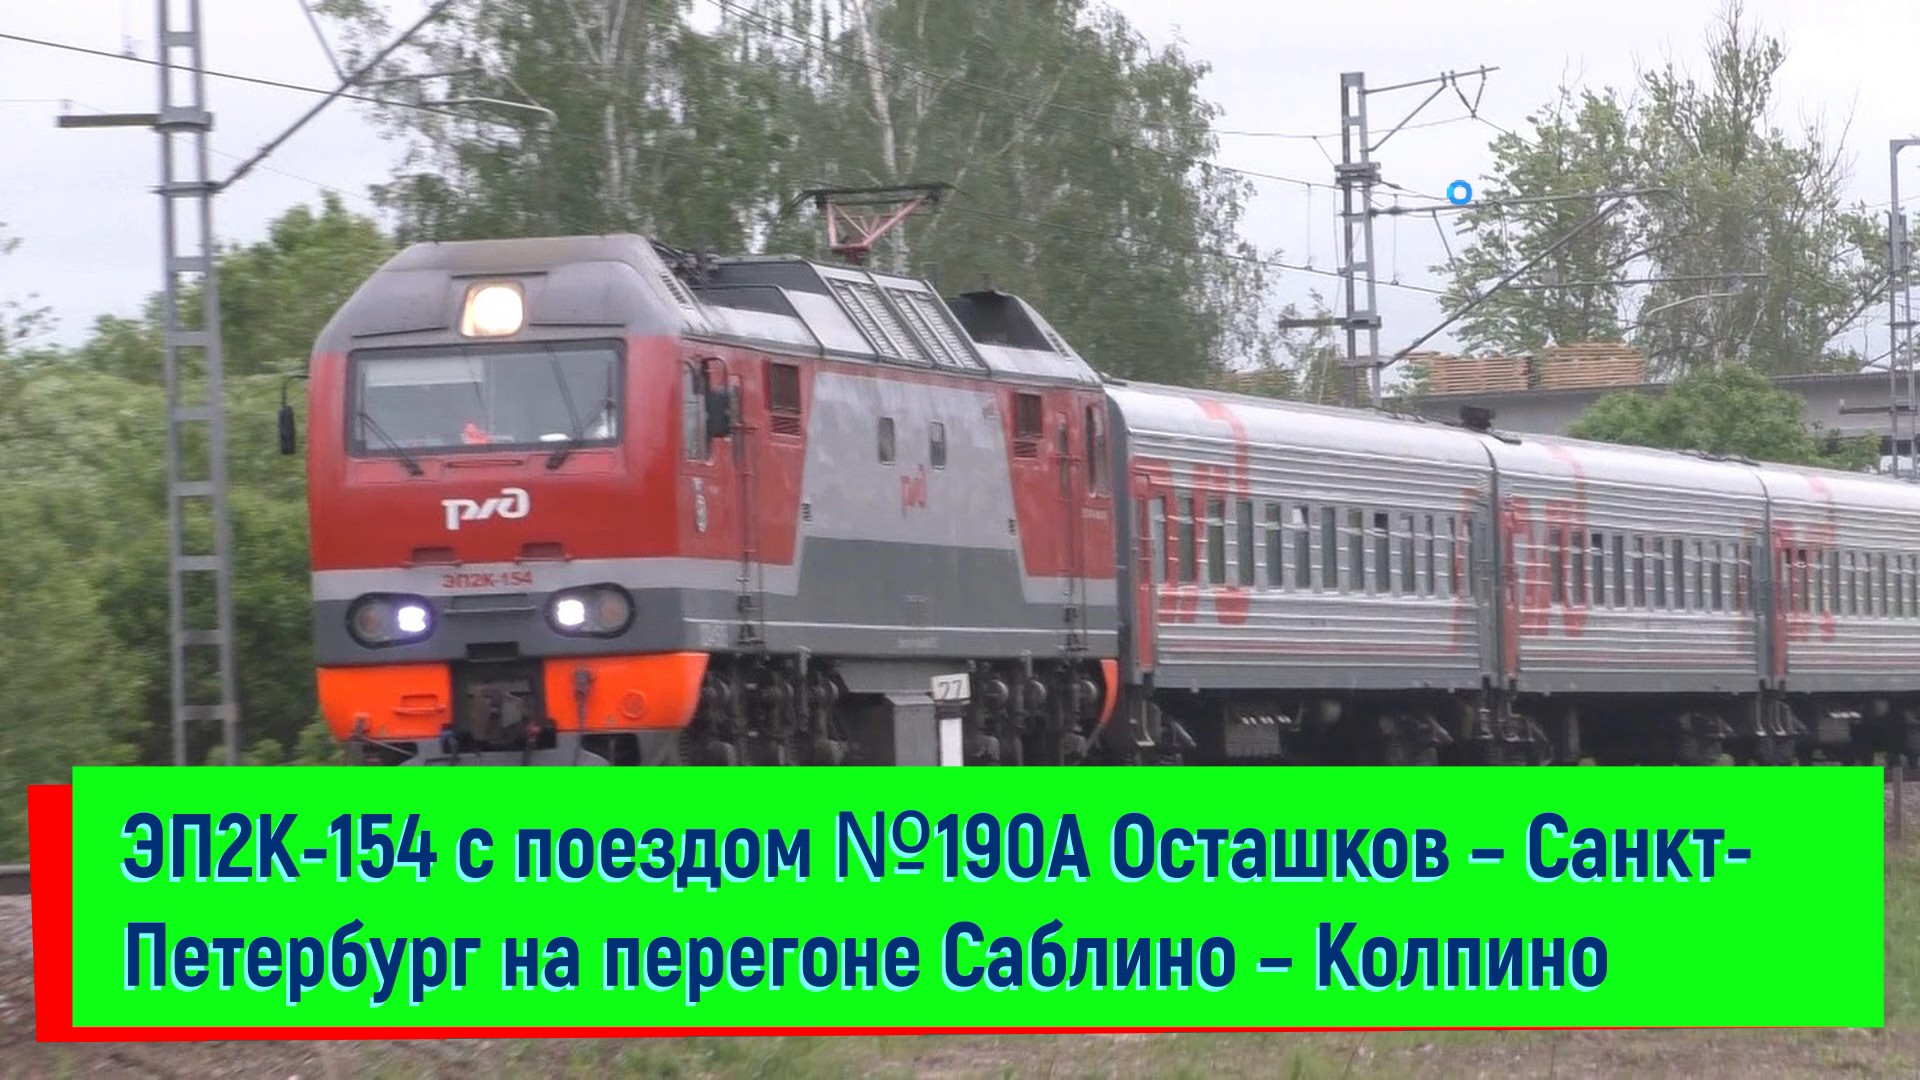 ЭП2К-154 с поездом №190А Осташков – Санкт-Петербург на перегоне Саблино – Колпино